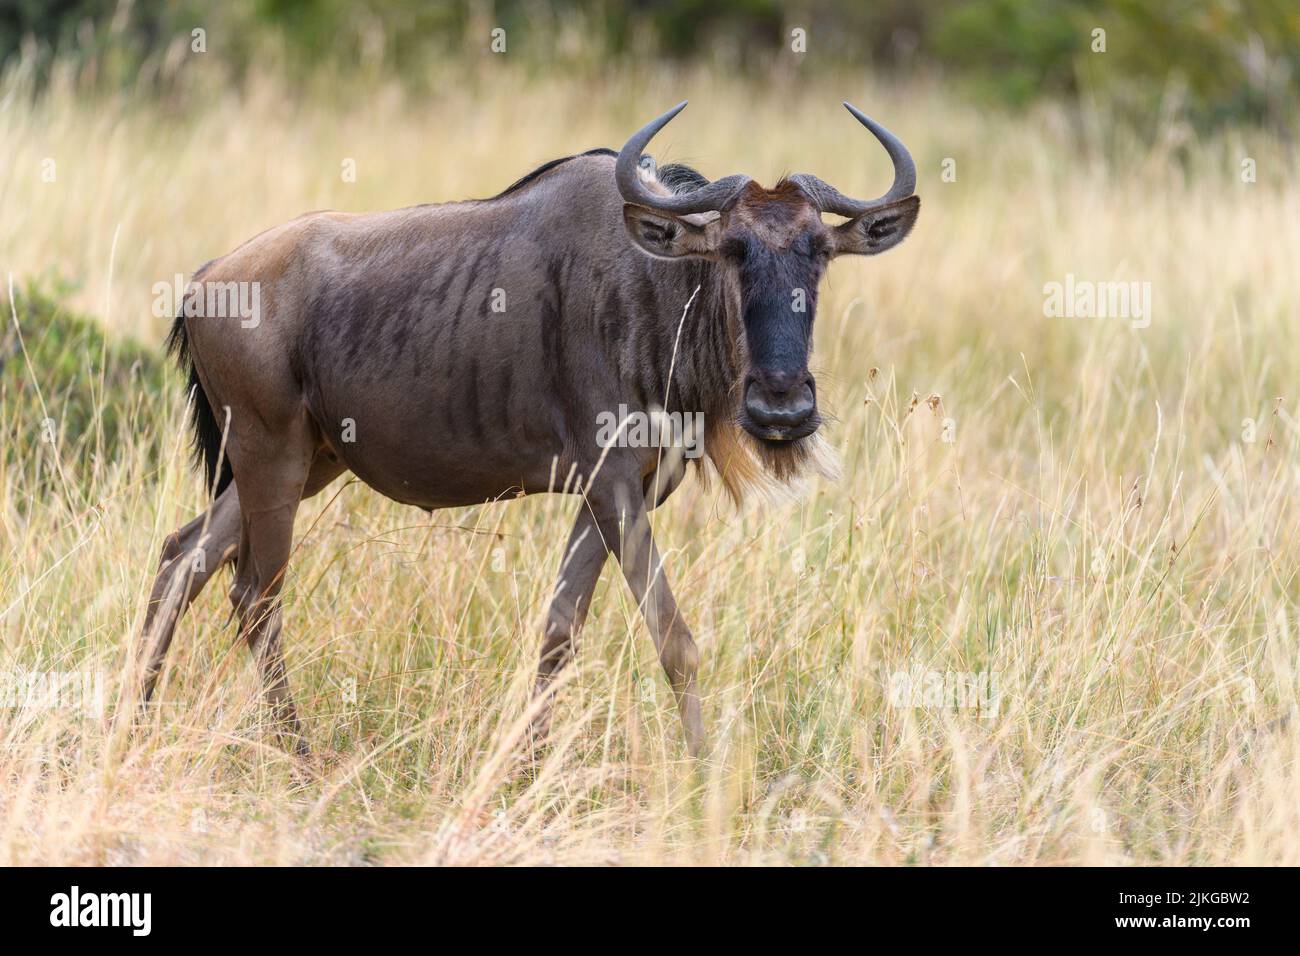 Wildebeest (Connochaetes taurinus,) from Maasai Mara, Kenya. Stock Photo